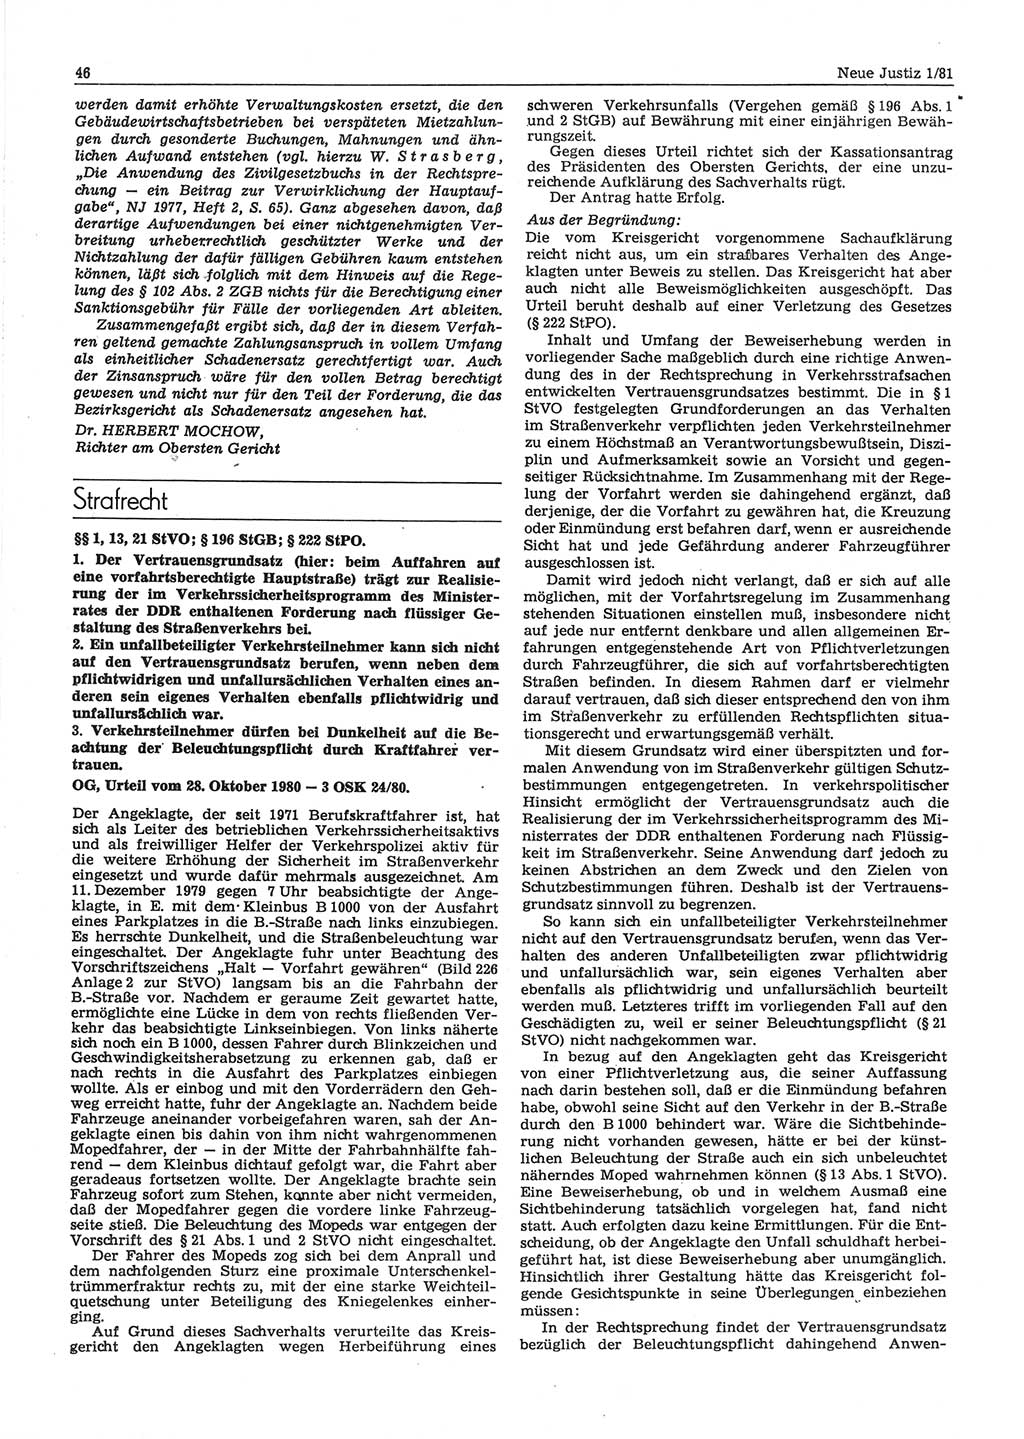 Neue Justiz (NJ), Zeitschrift für sozialistisches Recht und Gesetzlichkeit [Deutsche Demokratische Republik (DDR)], 35. Jahrgang 1981, Seite 46 (NJ DDR 1981, S. 46)